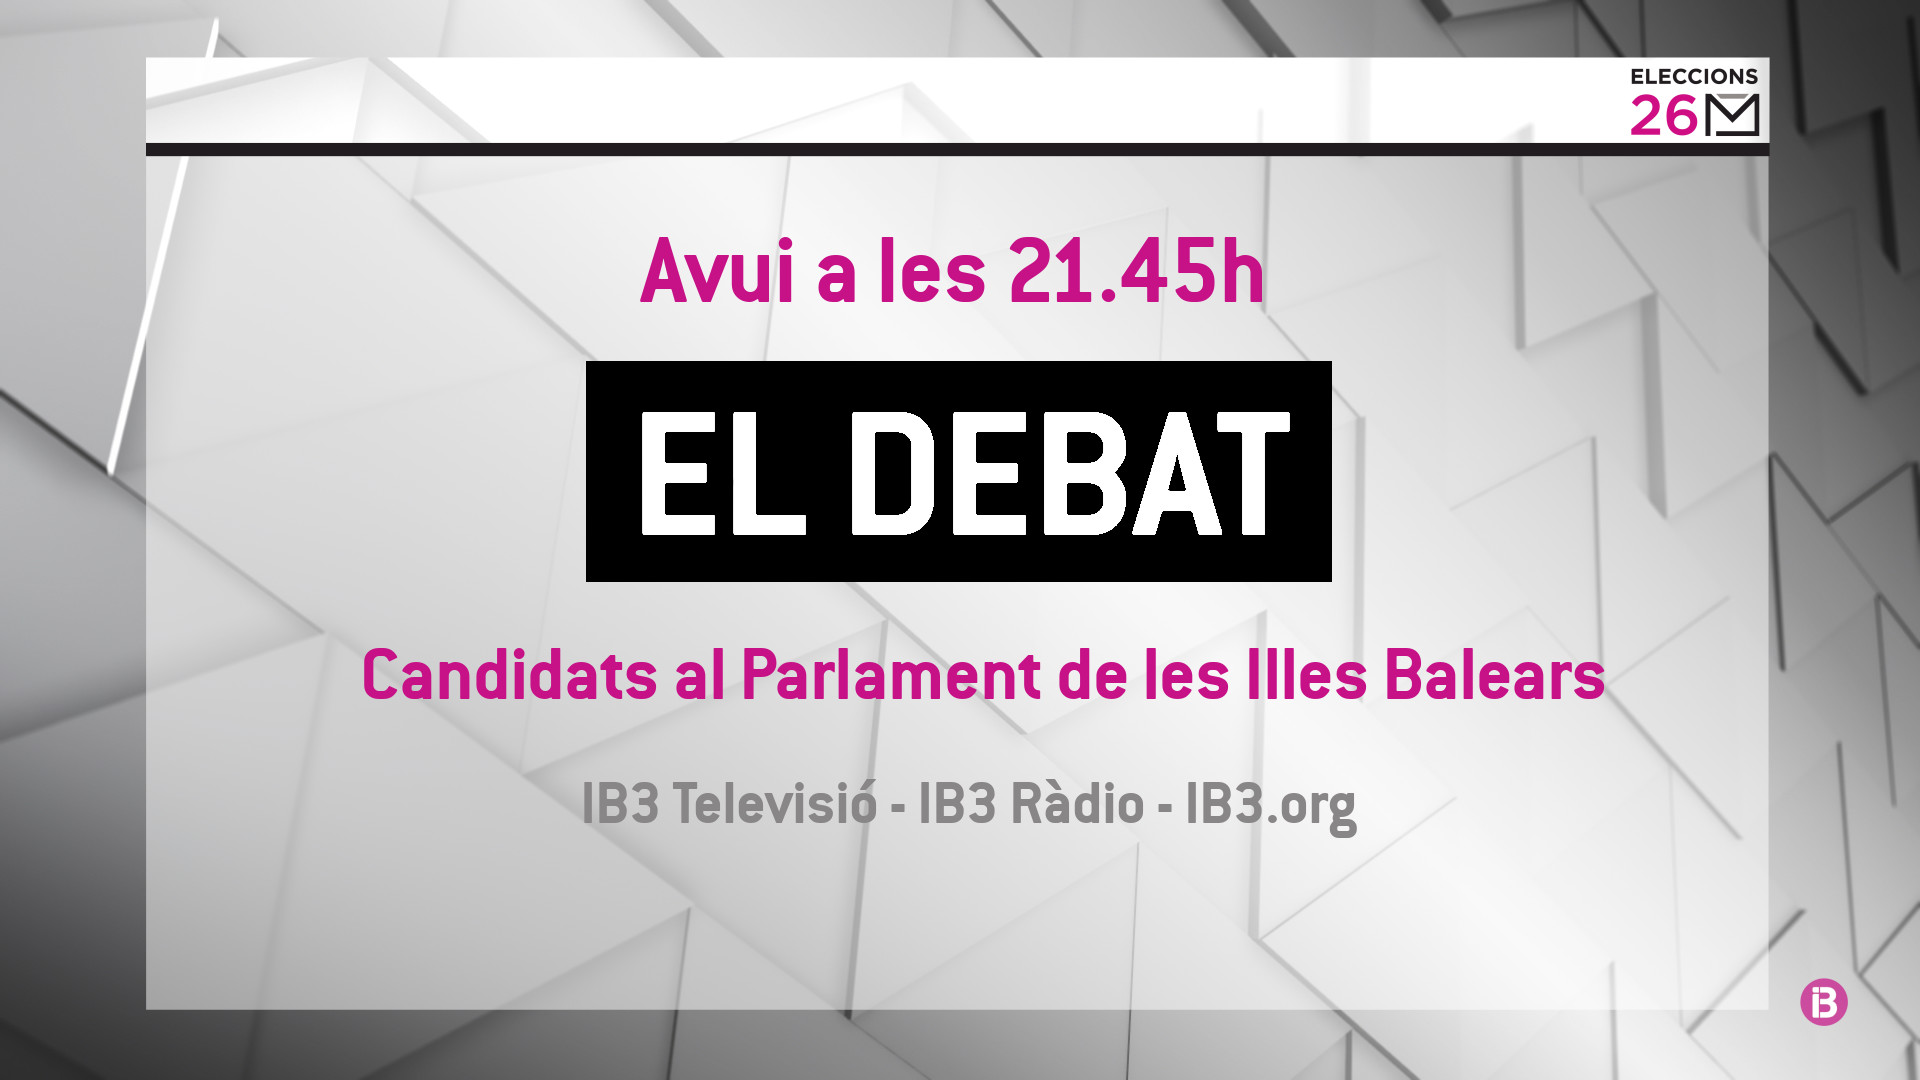 IB3+emet+avui+a+televisi%C3%B3+i+r%C3%A0dio+un+debat+amb+els+8+candidats+al+Parlament+de+les+Illes+Balears